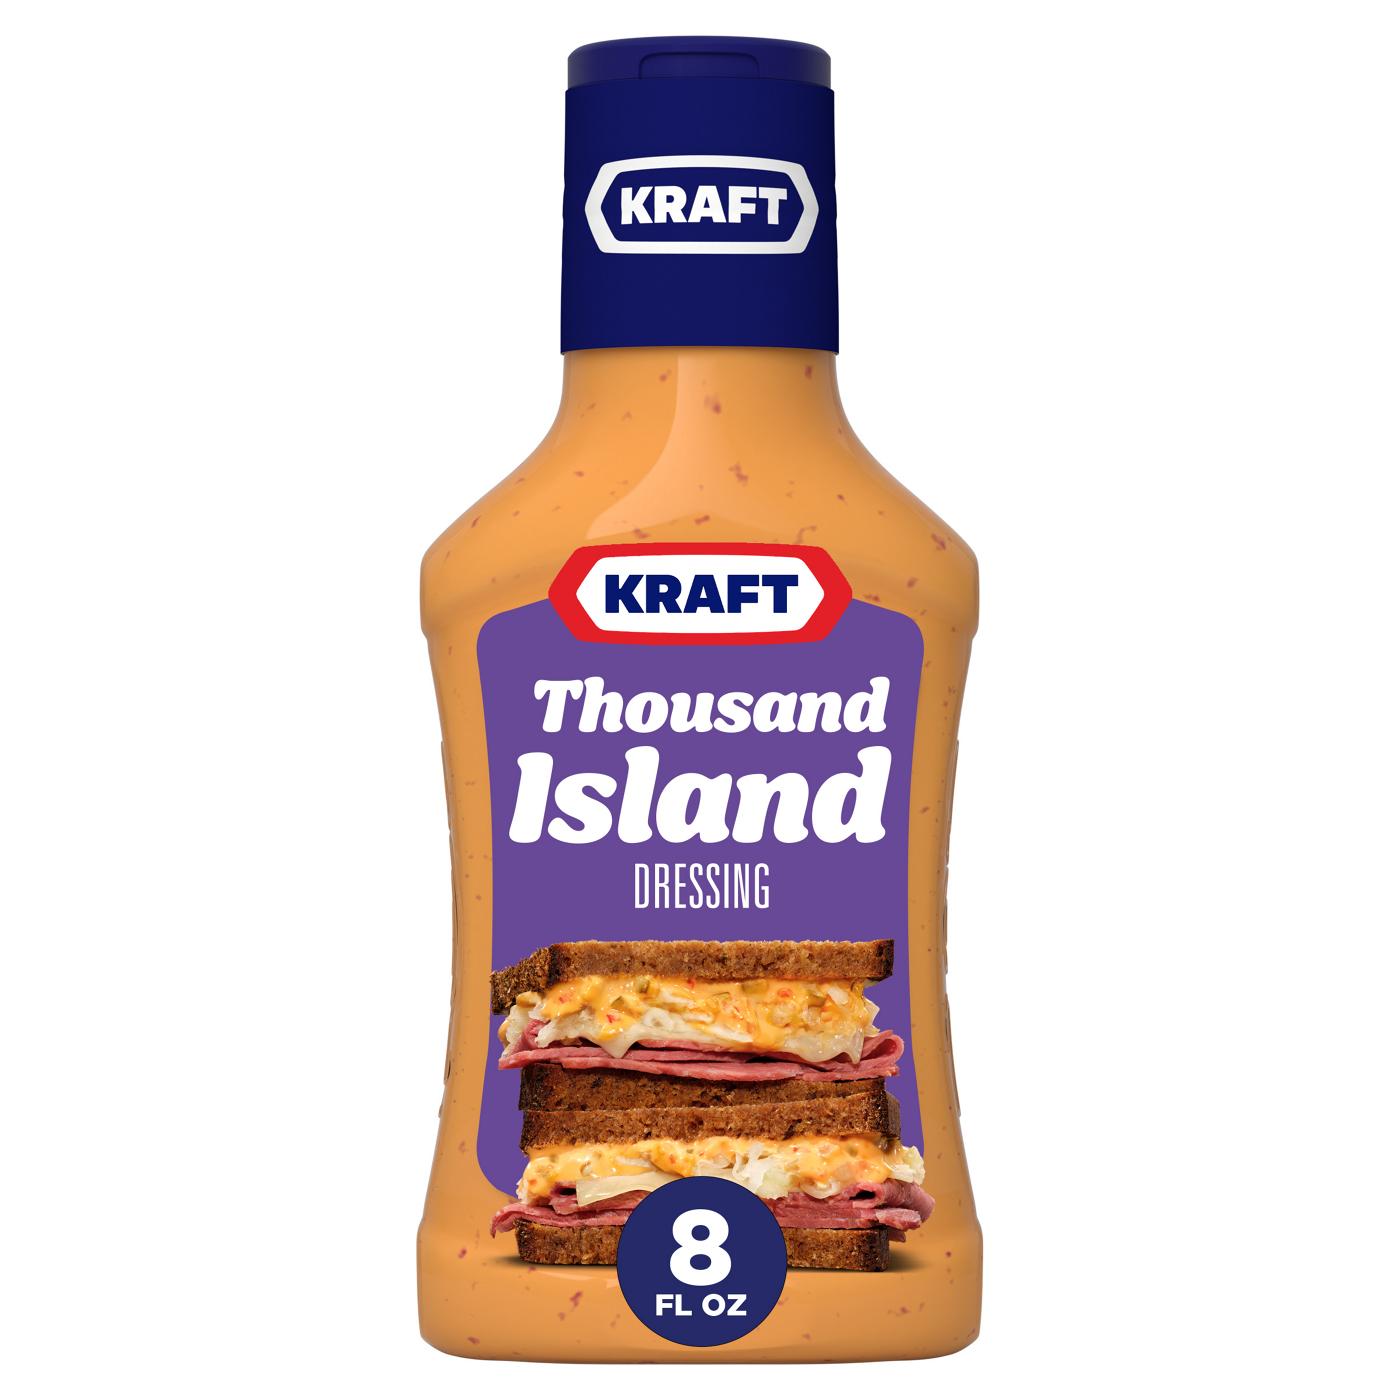 Kraft Thousand Island Dressing; image 1 of 2